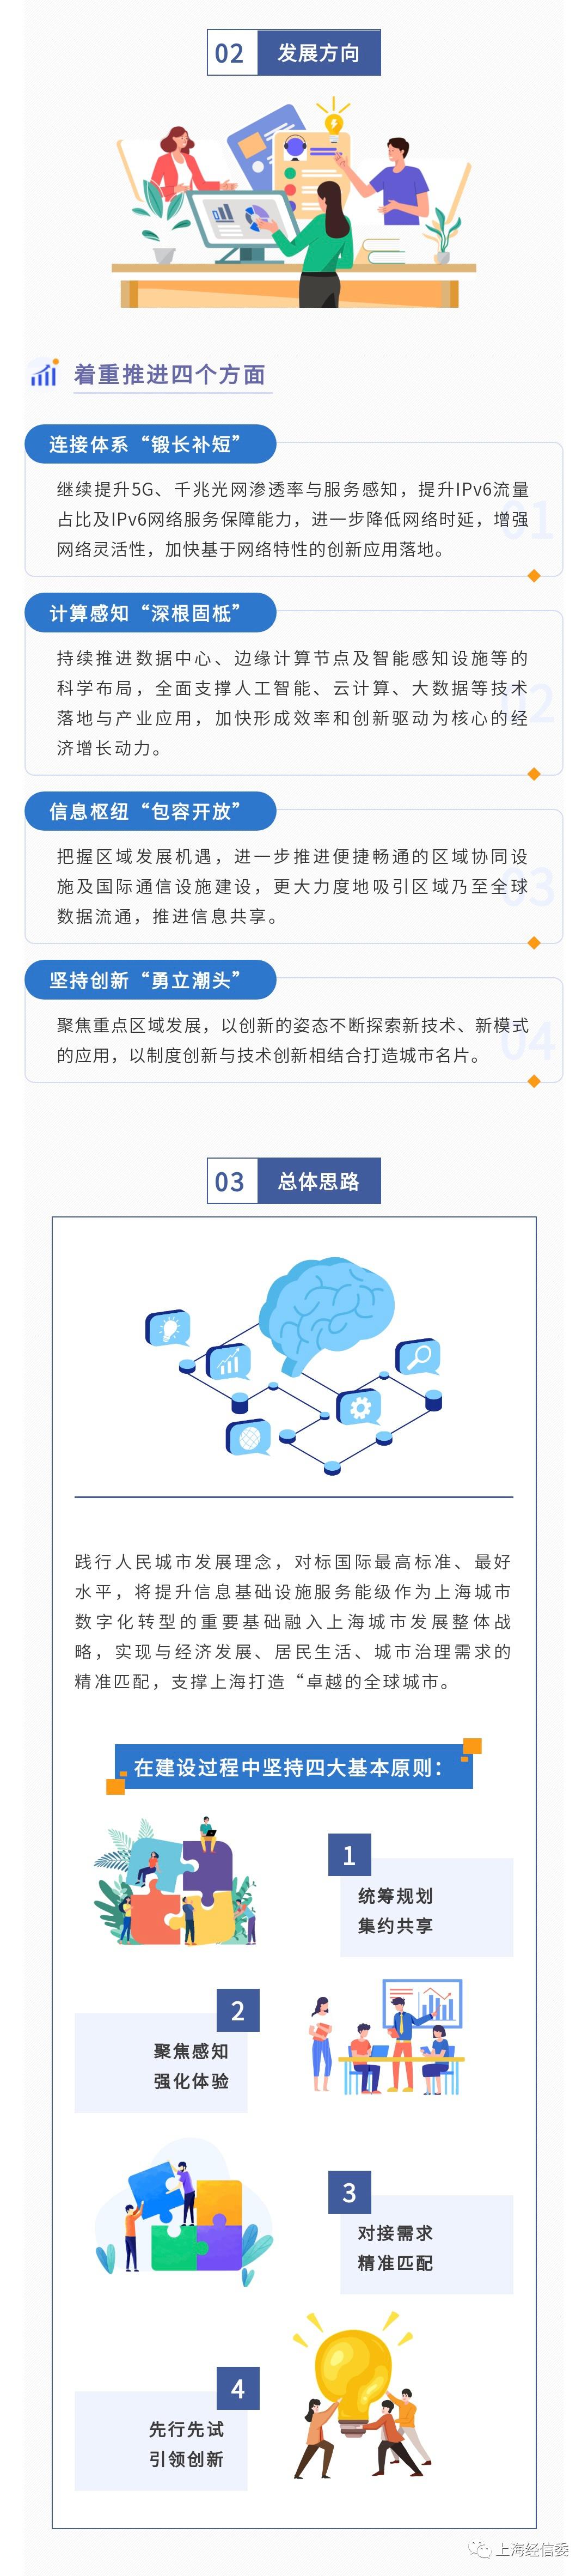 【图解】一图读懂《上海市新一代信息基础设施发展“十四五”规划》